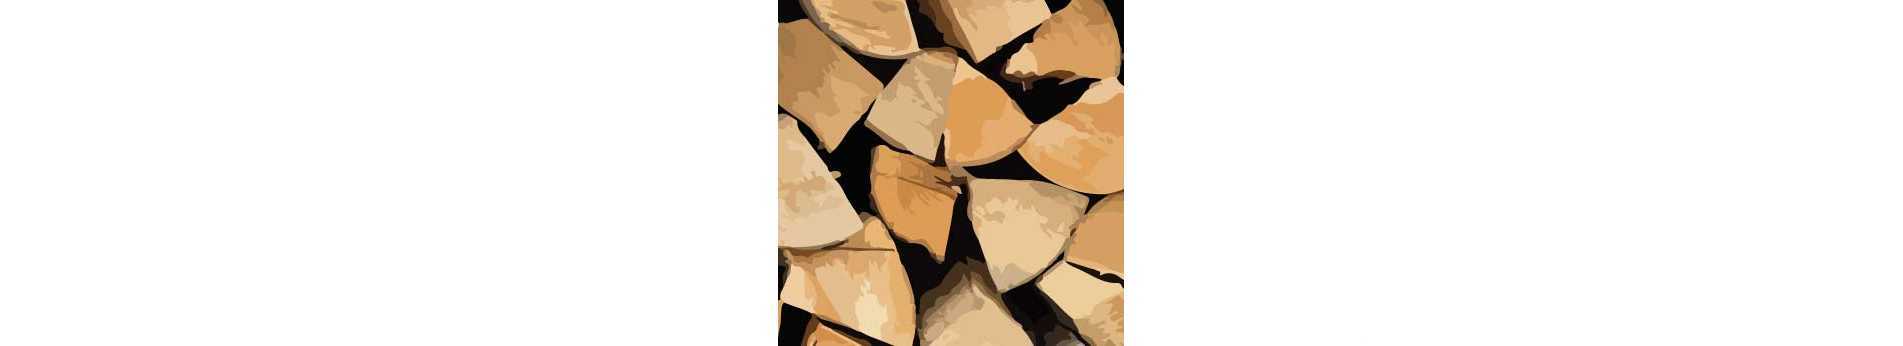 Fällen, Schneiden und Spalten von Holz